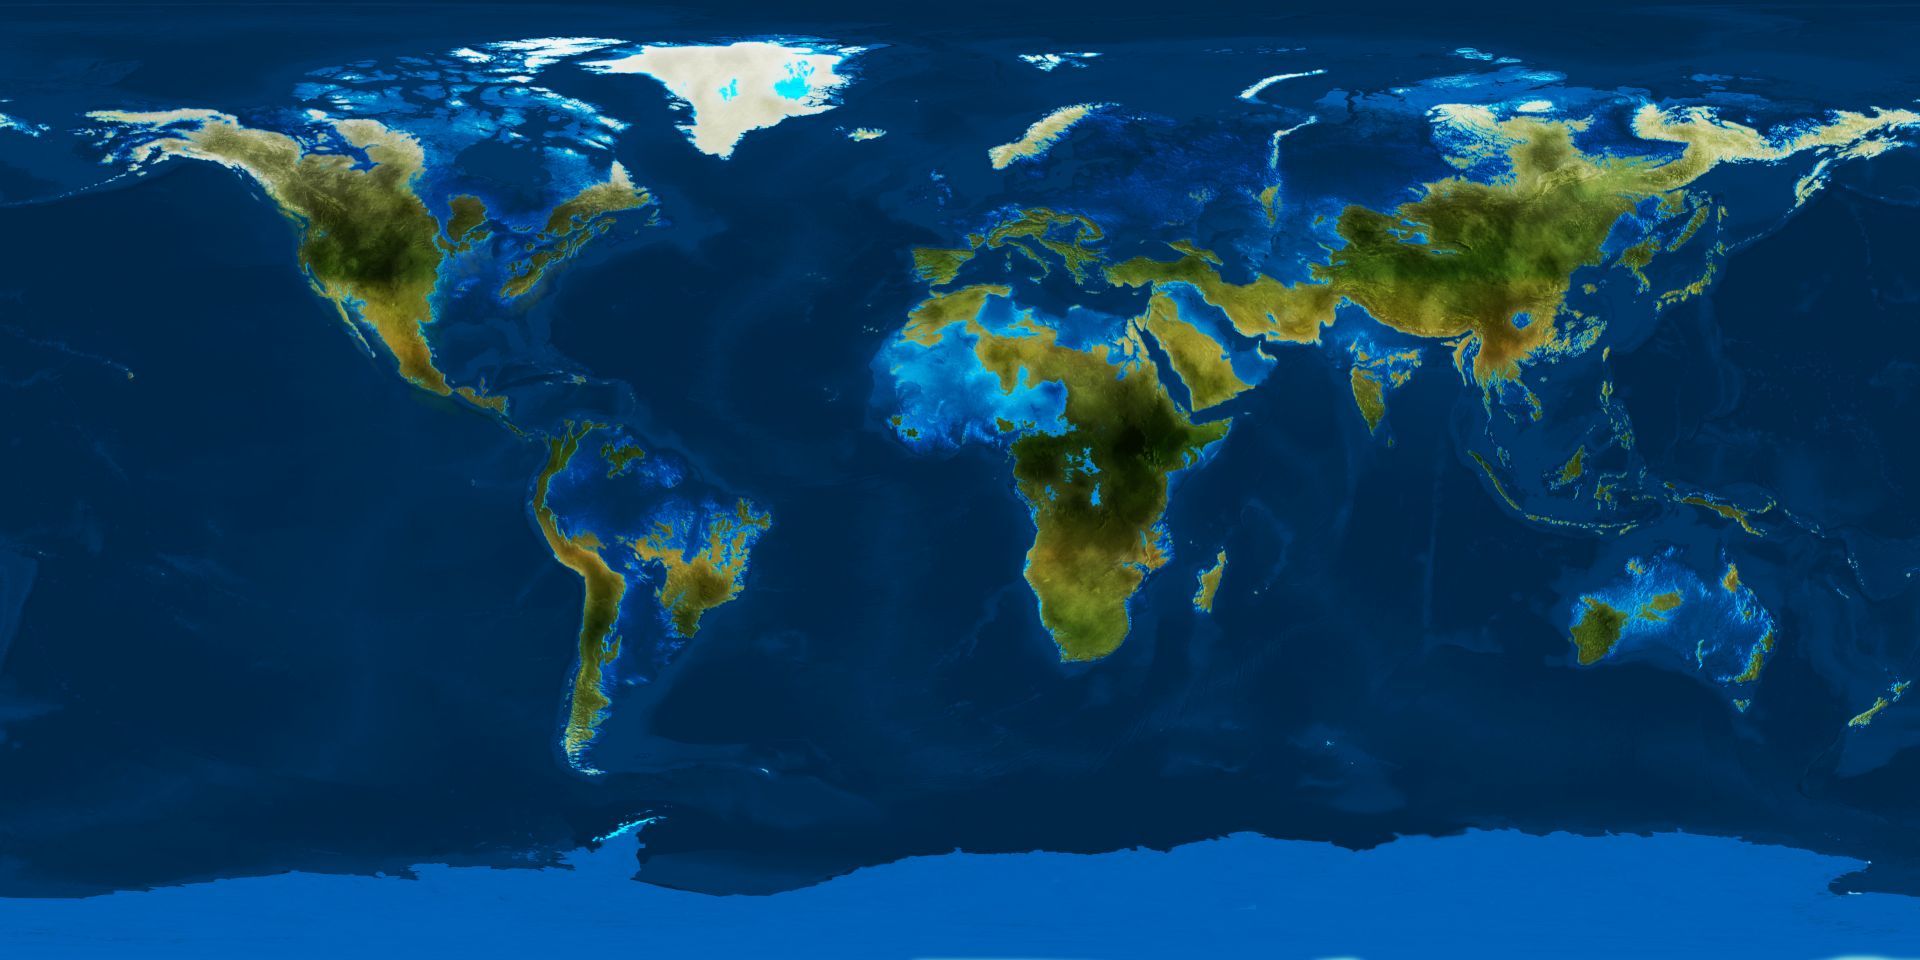 terra_nova_world_map_by_demetrio